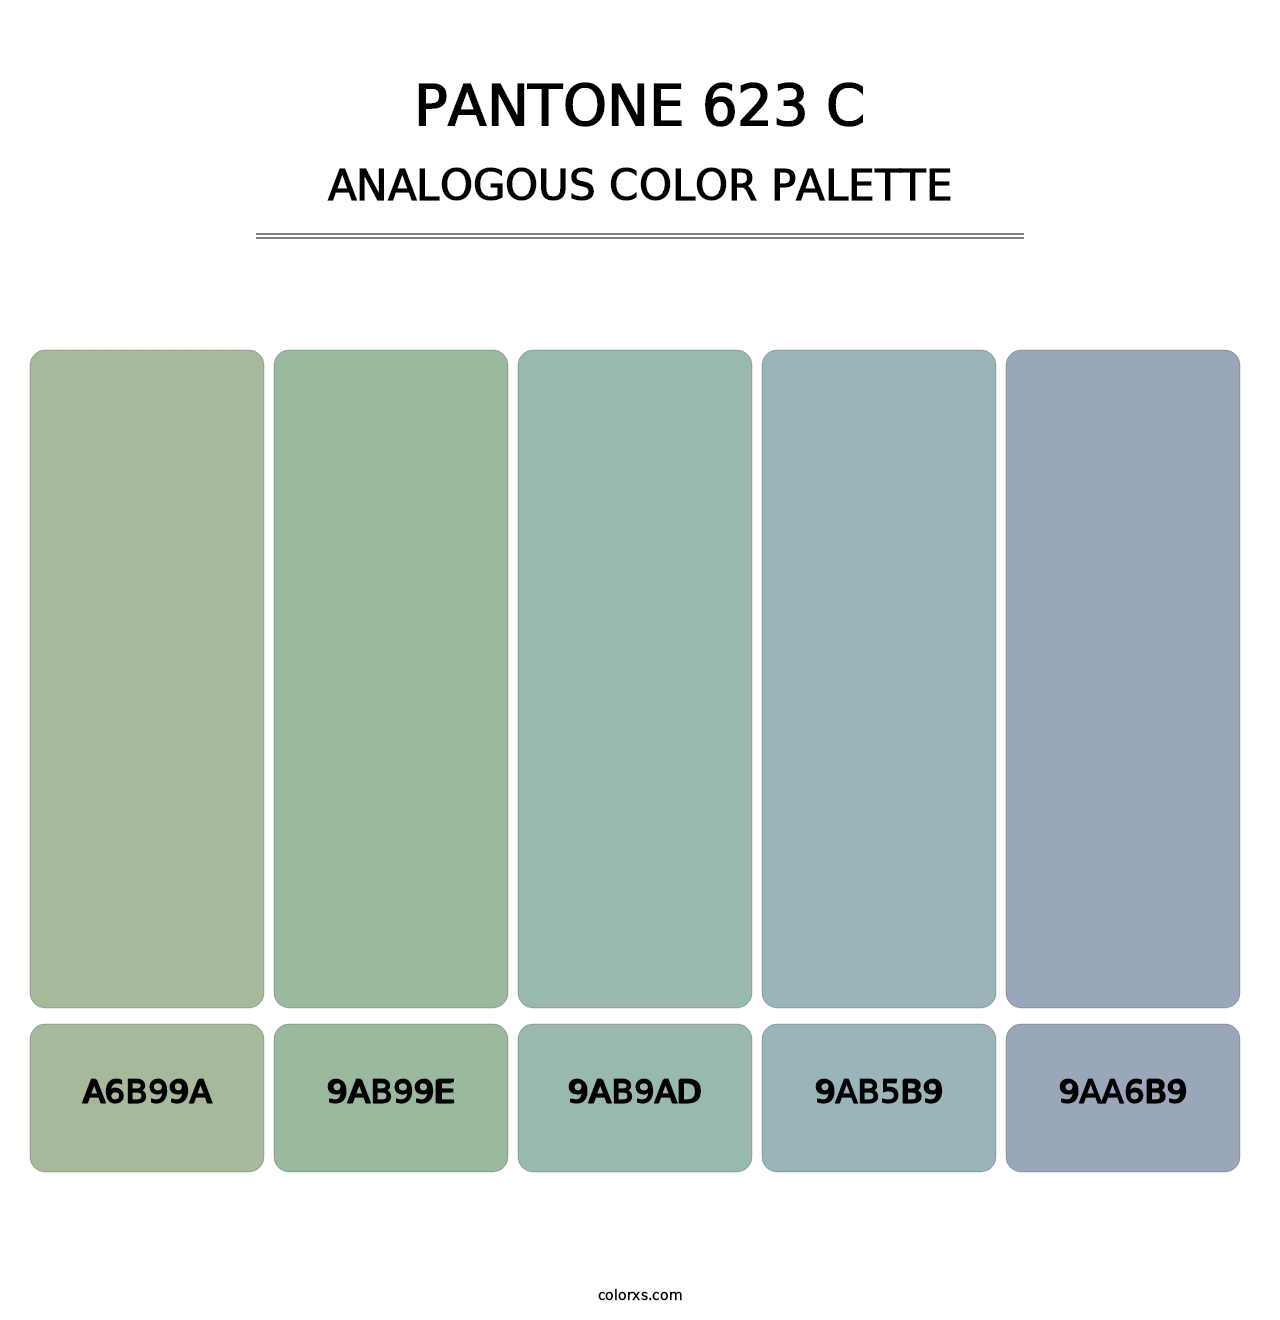 PANTONE 623 C - Analogous Color Palette